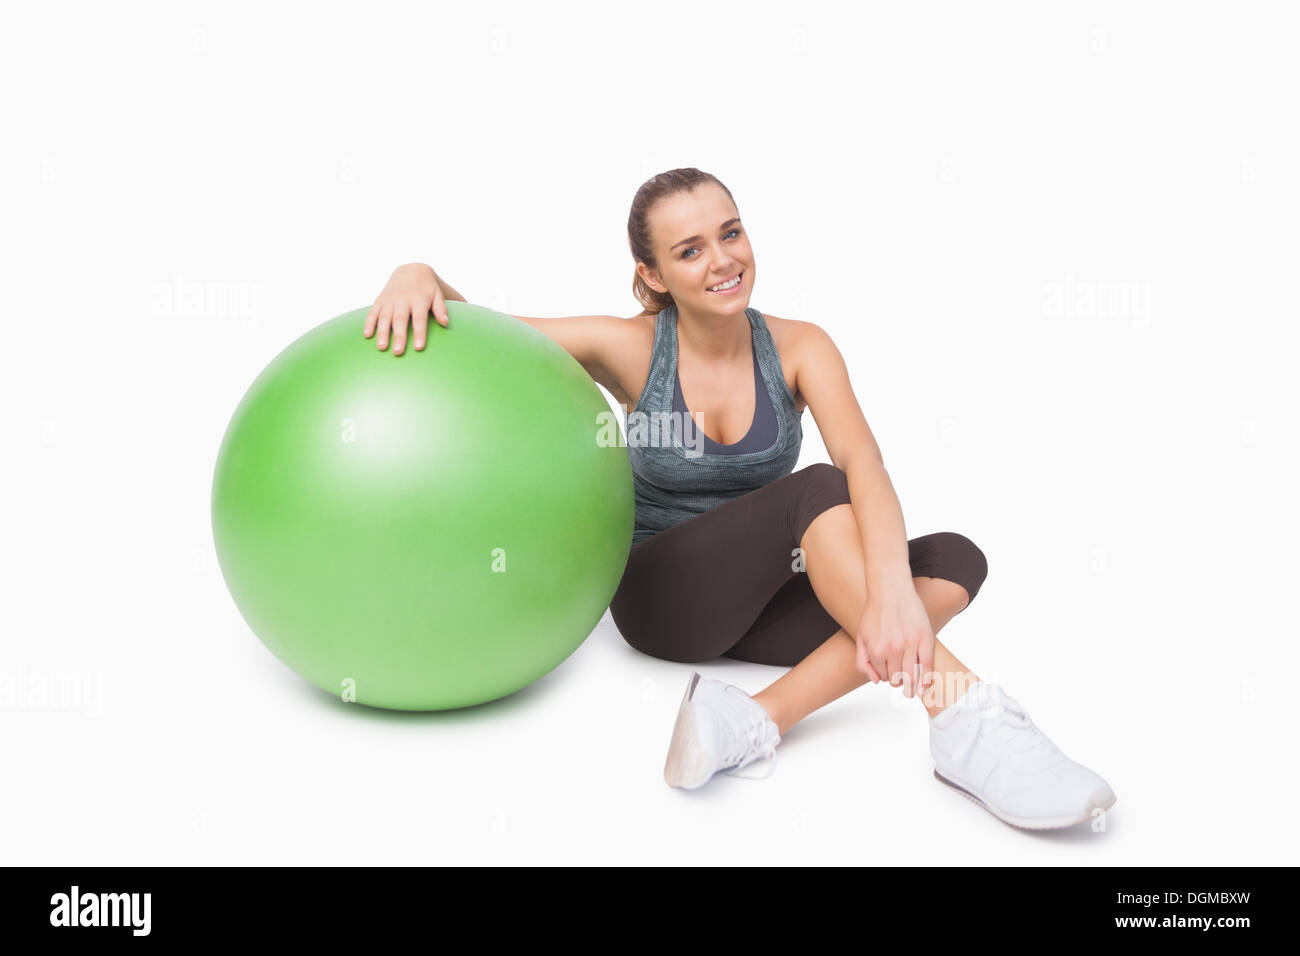 Nette Frau sitzt neben einem Fitness-ball Stockfoto